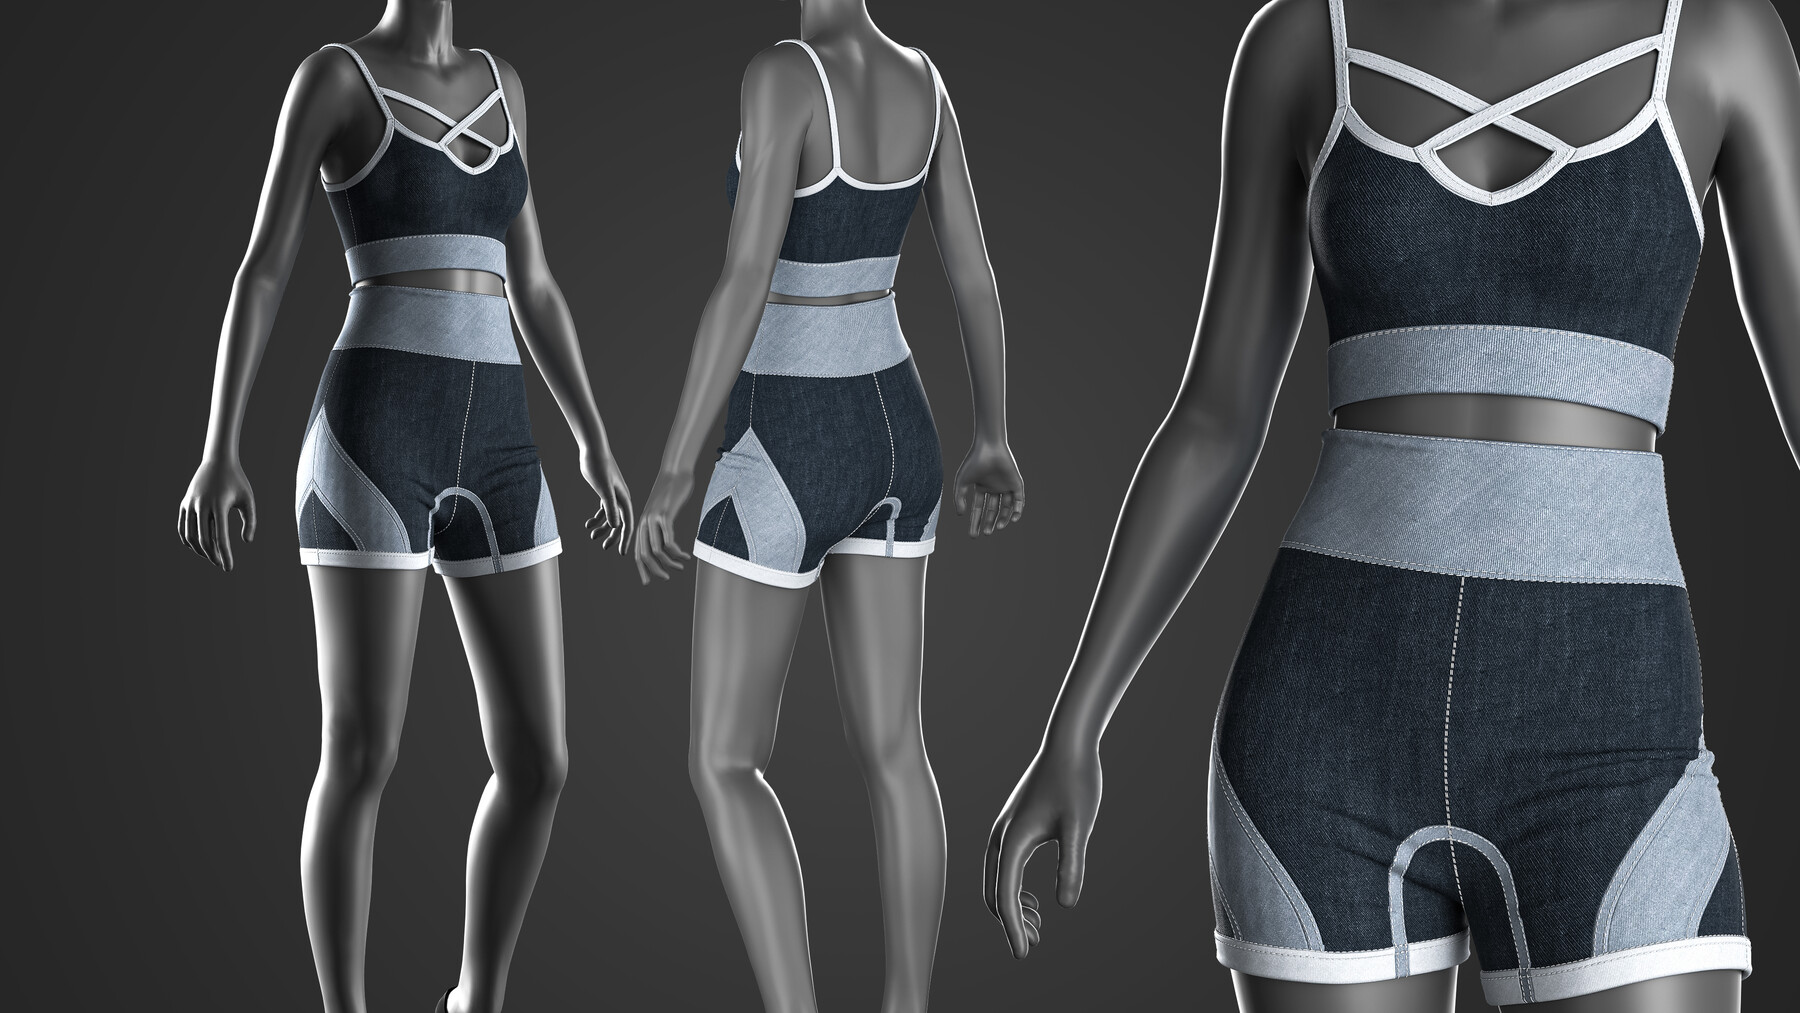 Making sport bra in Marvelous Designer Timelapse 